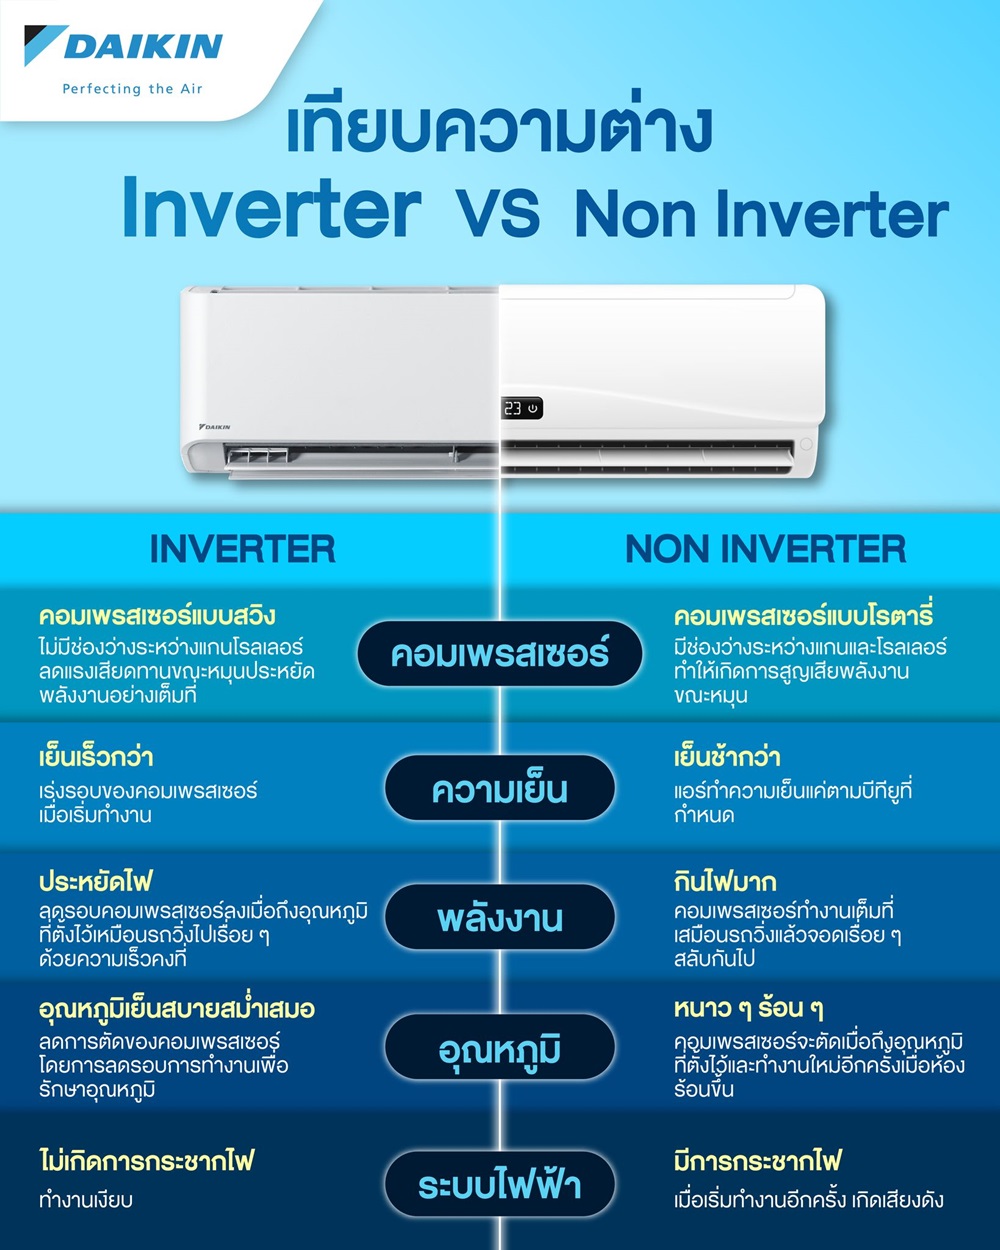 เทียบความต่าง แอร์ธรรมดา vs แอร์อินเวอร์เตอร์ (Inverter)